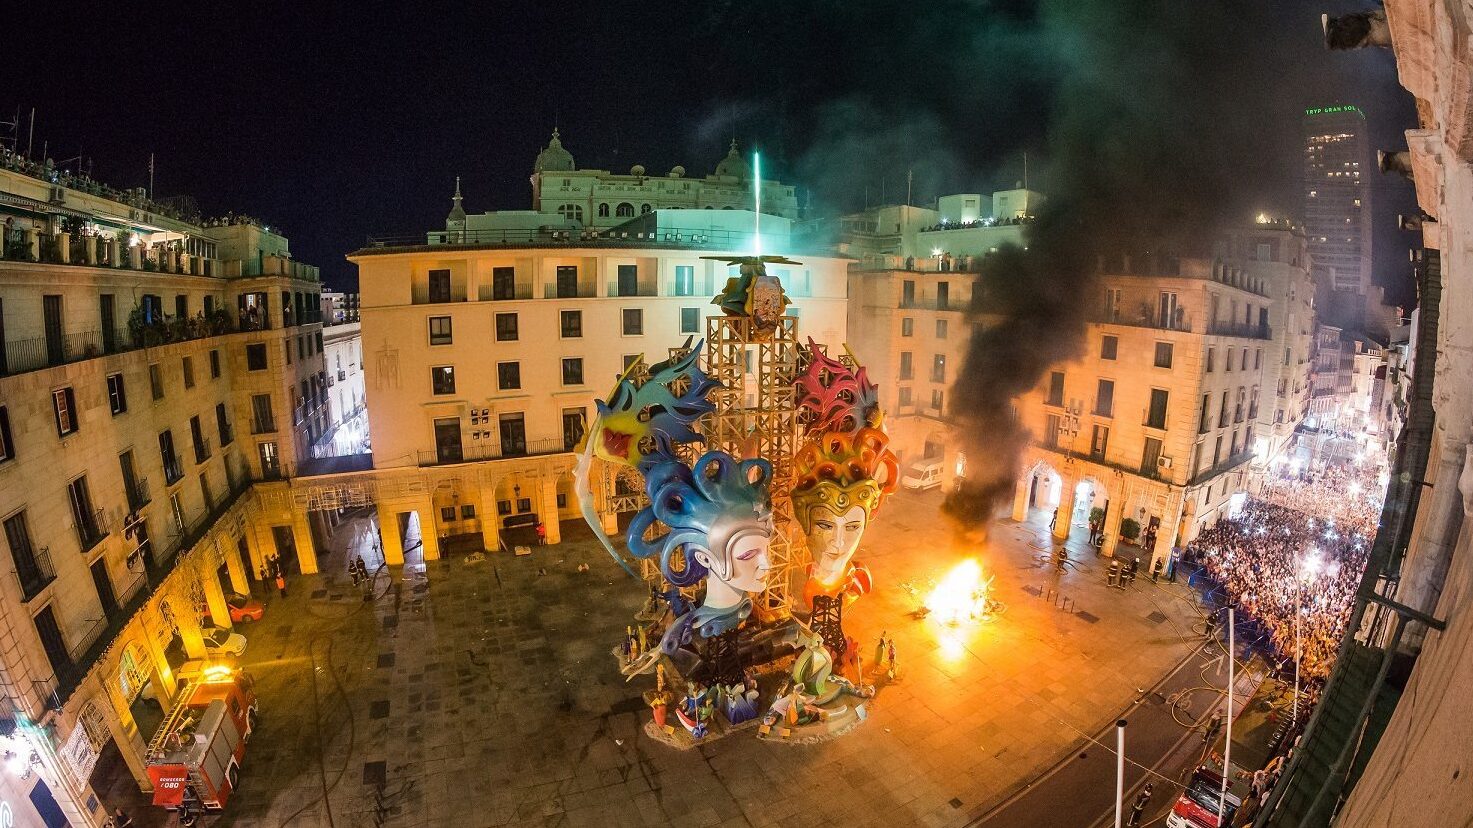 La Noche de San Juan en Alicante 2023: Tradiciones, celebraciones y eventos festivos a orillas del Mediterráneo.